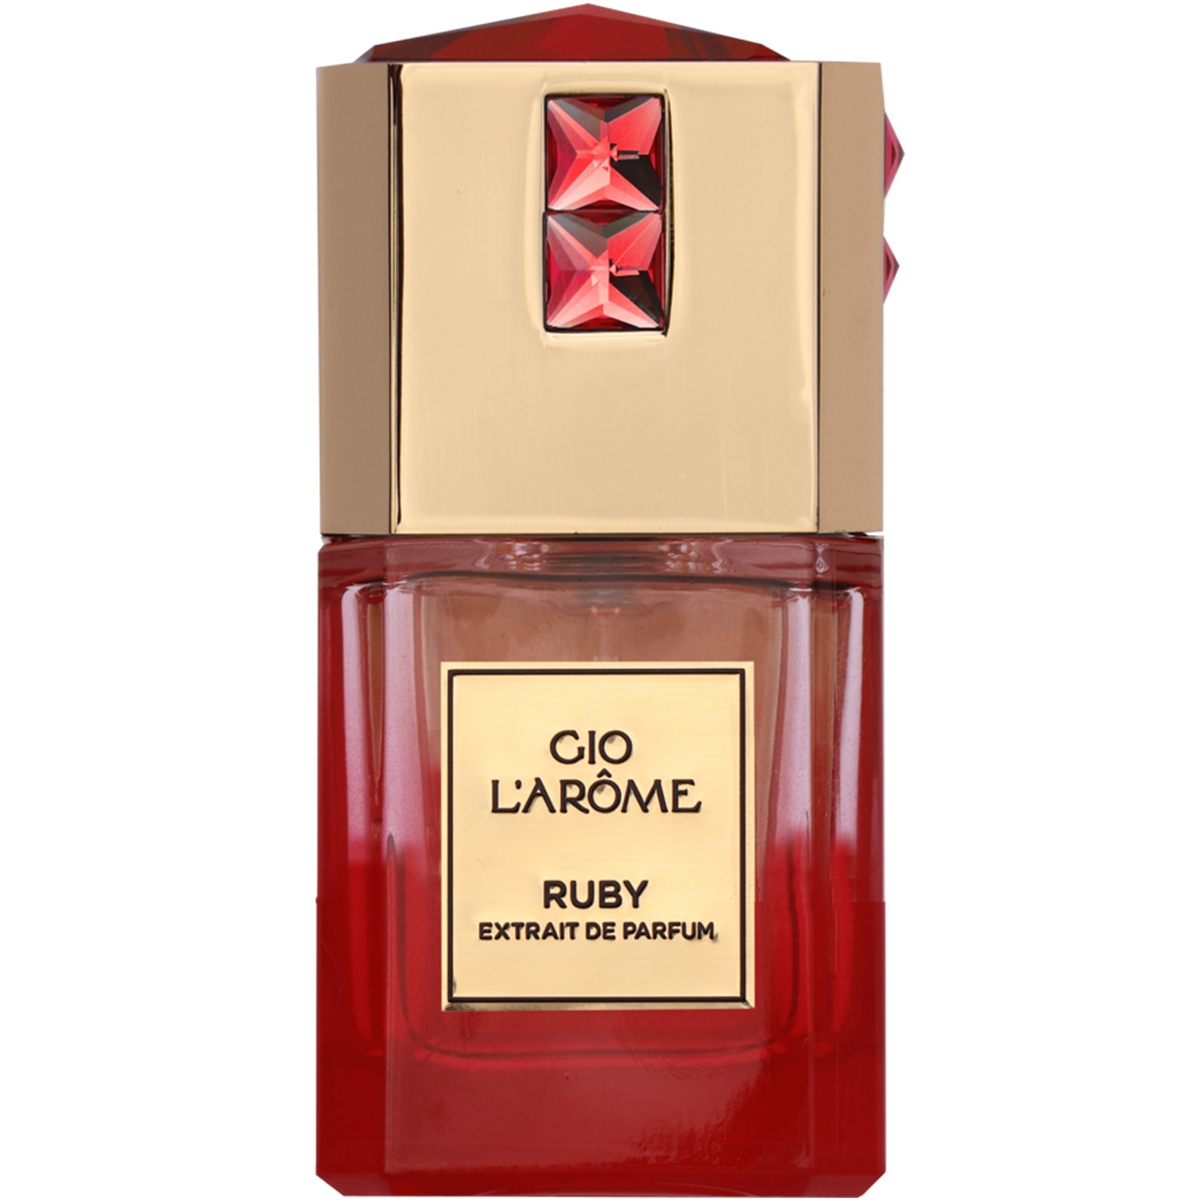 Ruby Gio L'Arome Perfumes, Unisex Perfumes, Arada Perfumes